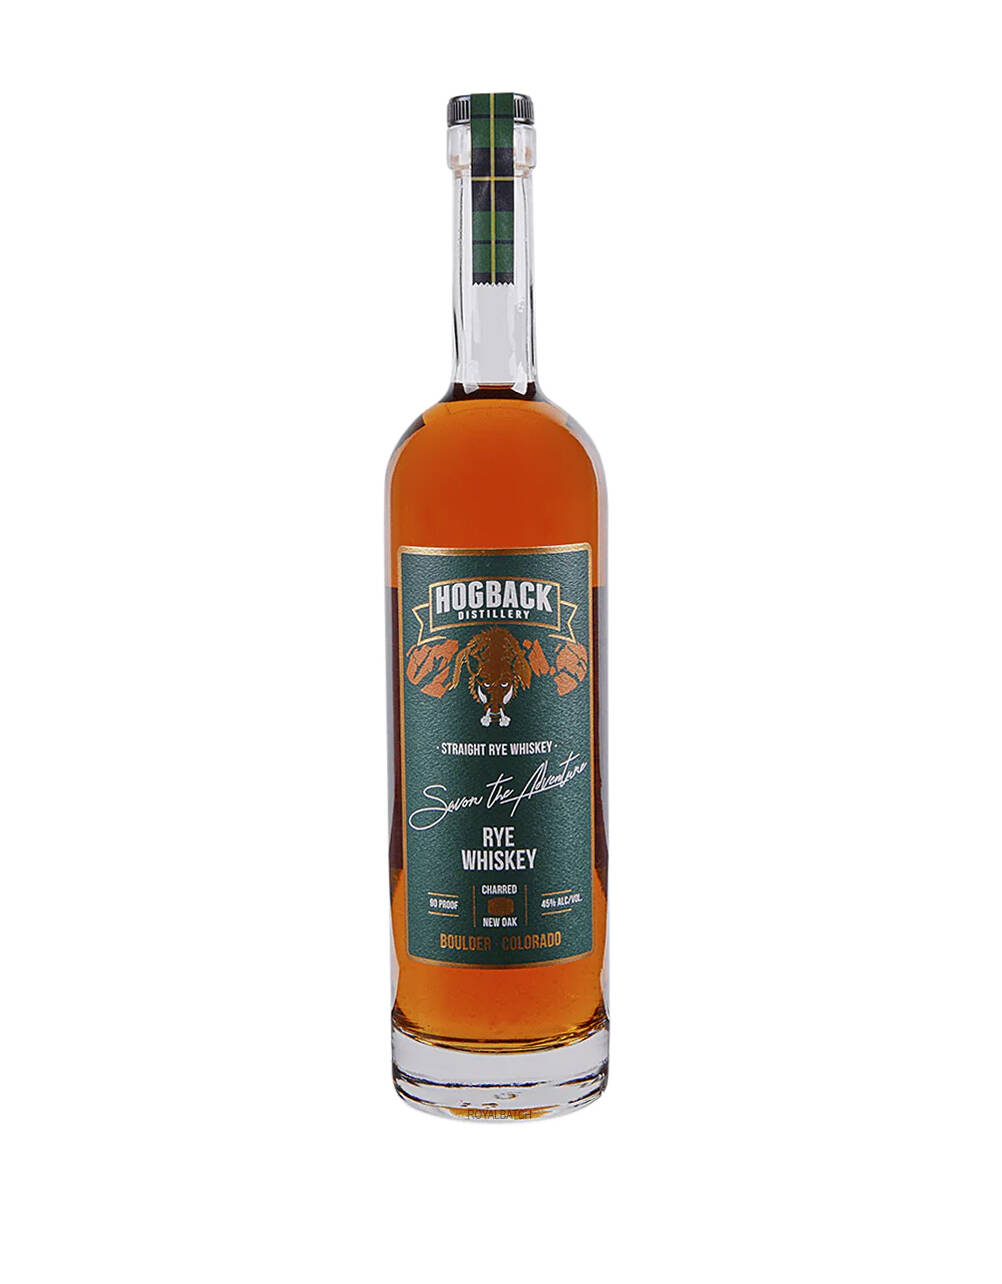 Hogback Distillery Straight Rye Whiskey